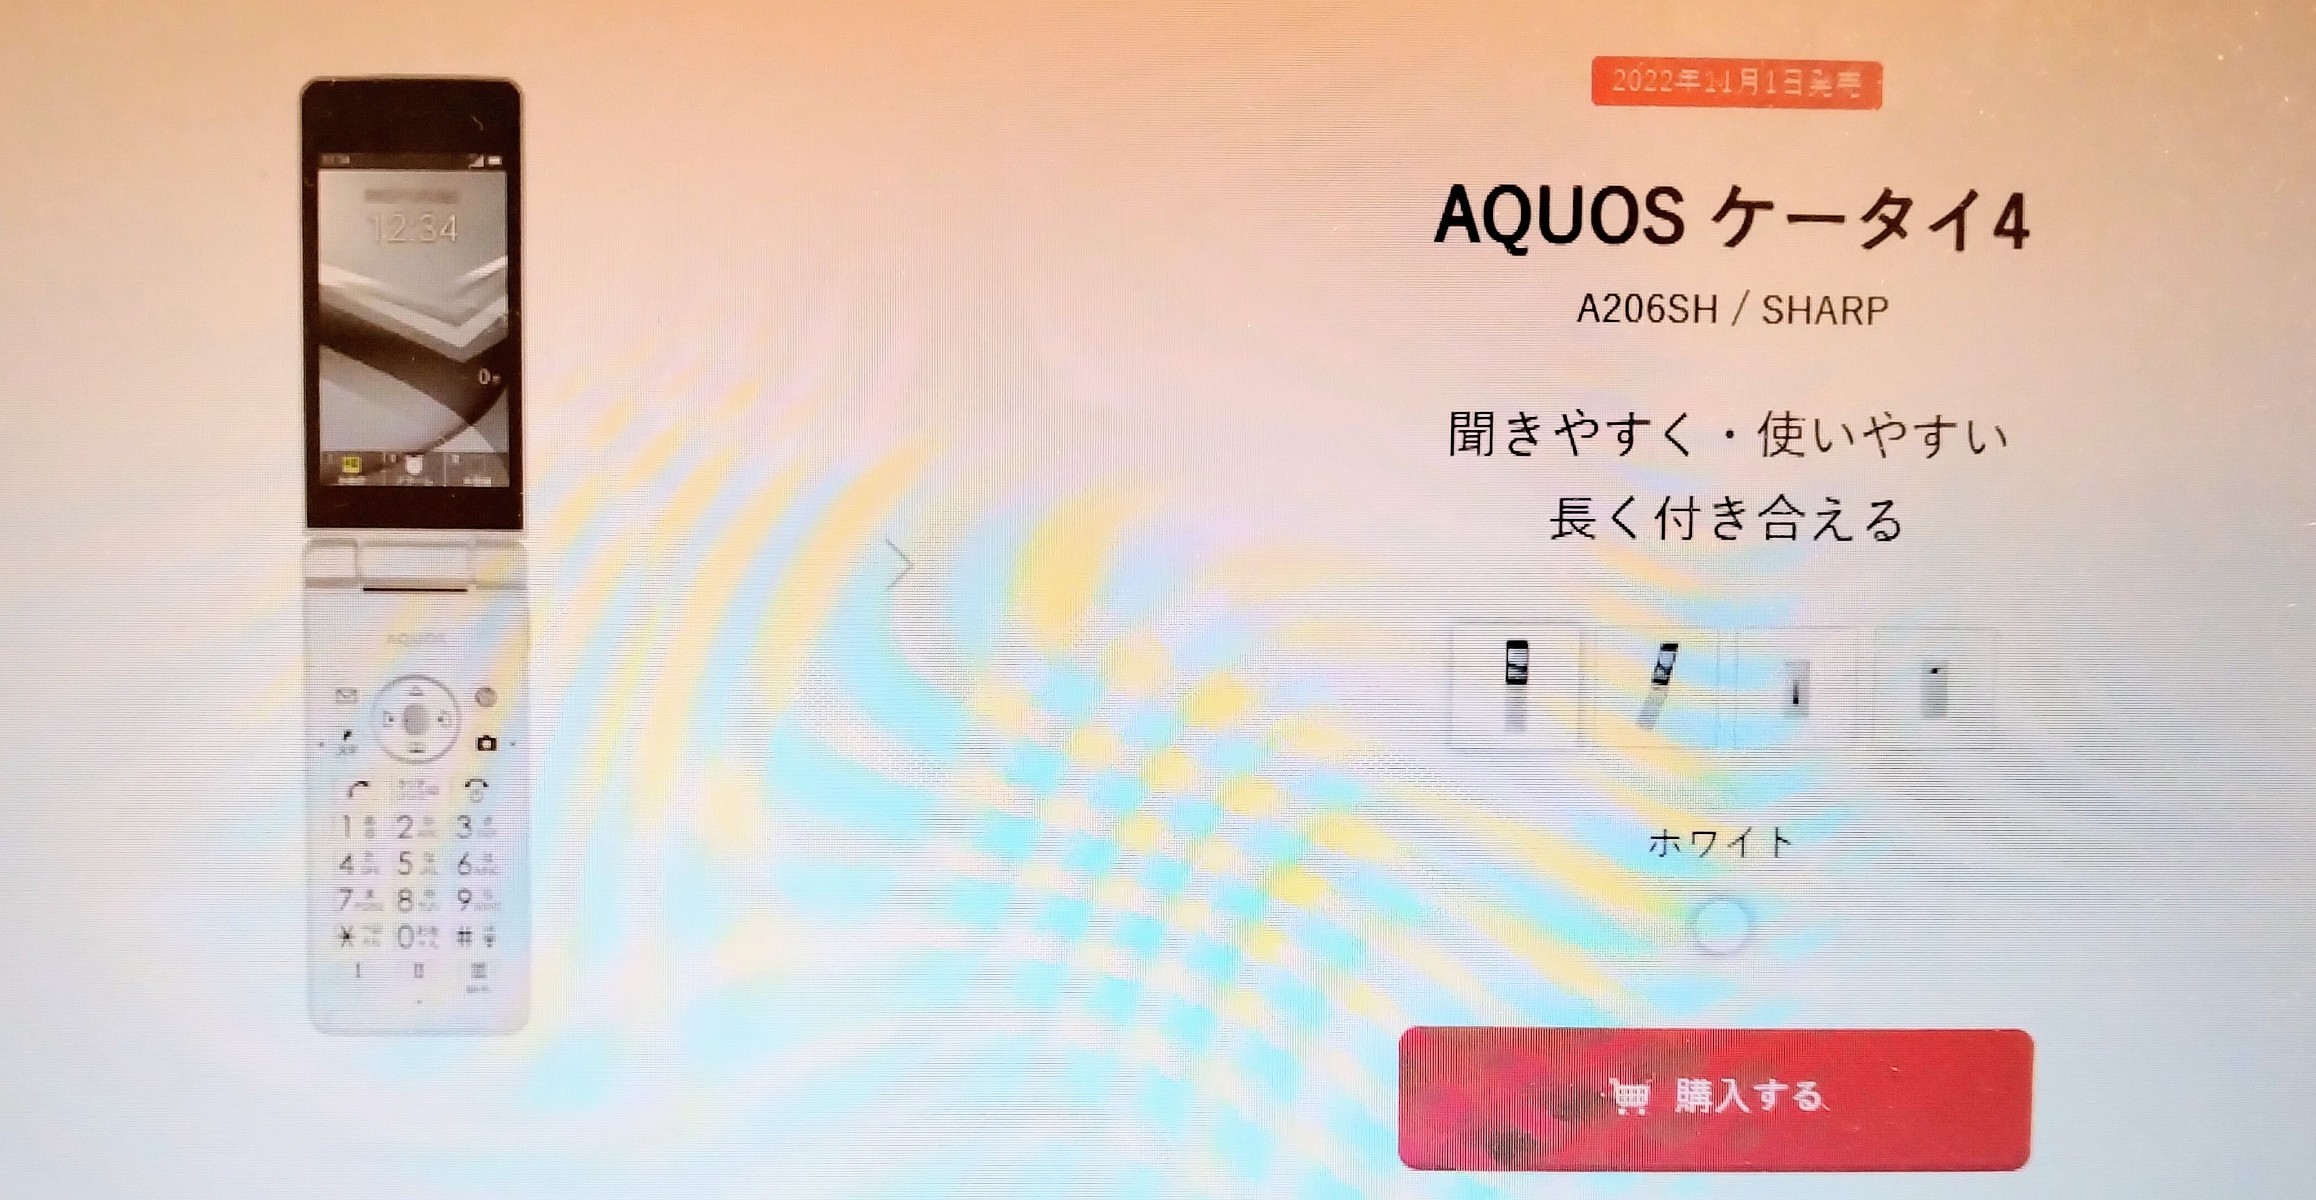 買い限定AQUOS ケータイ4 A206SH ホワイト simフリー 携帯電話本体